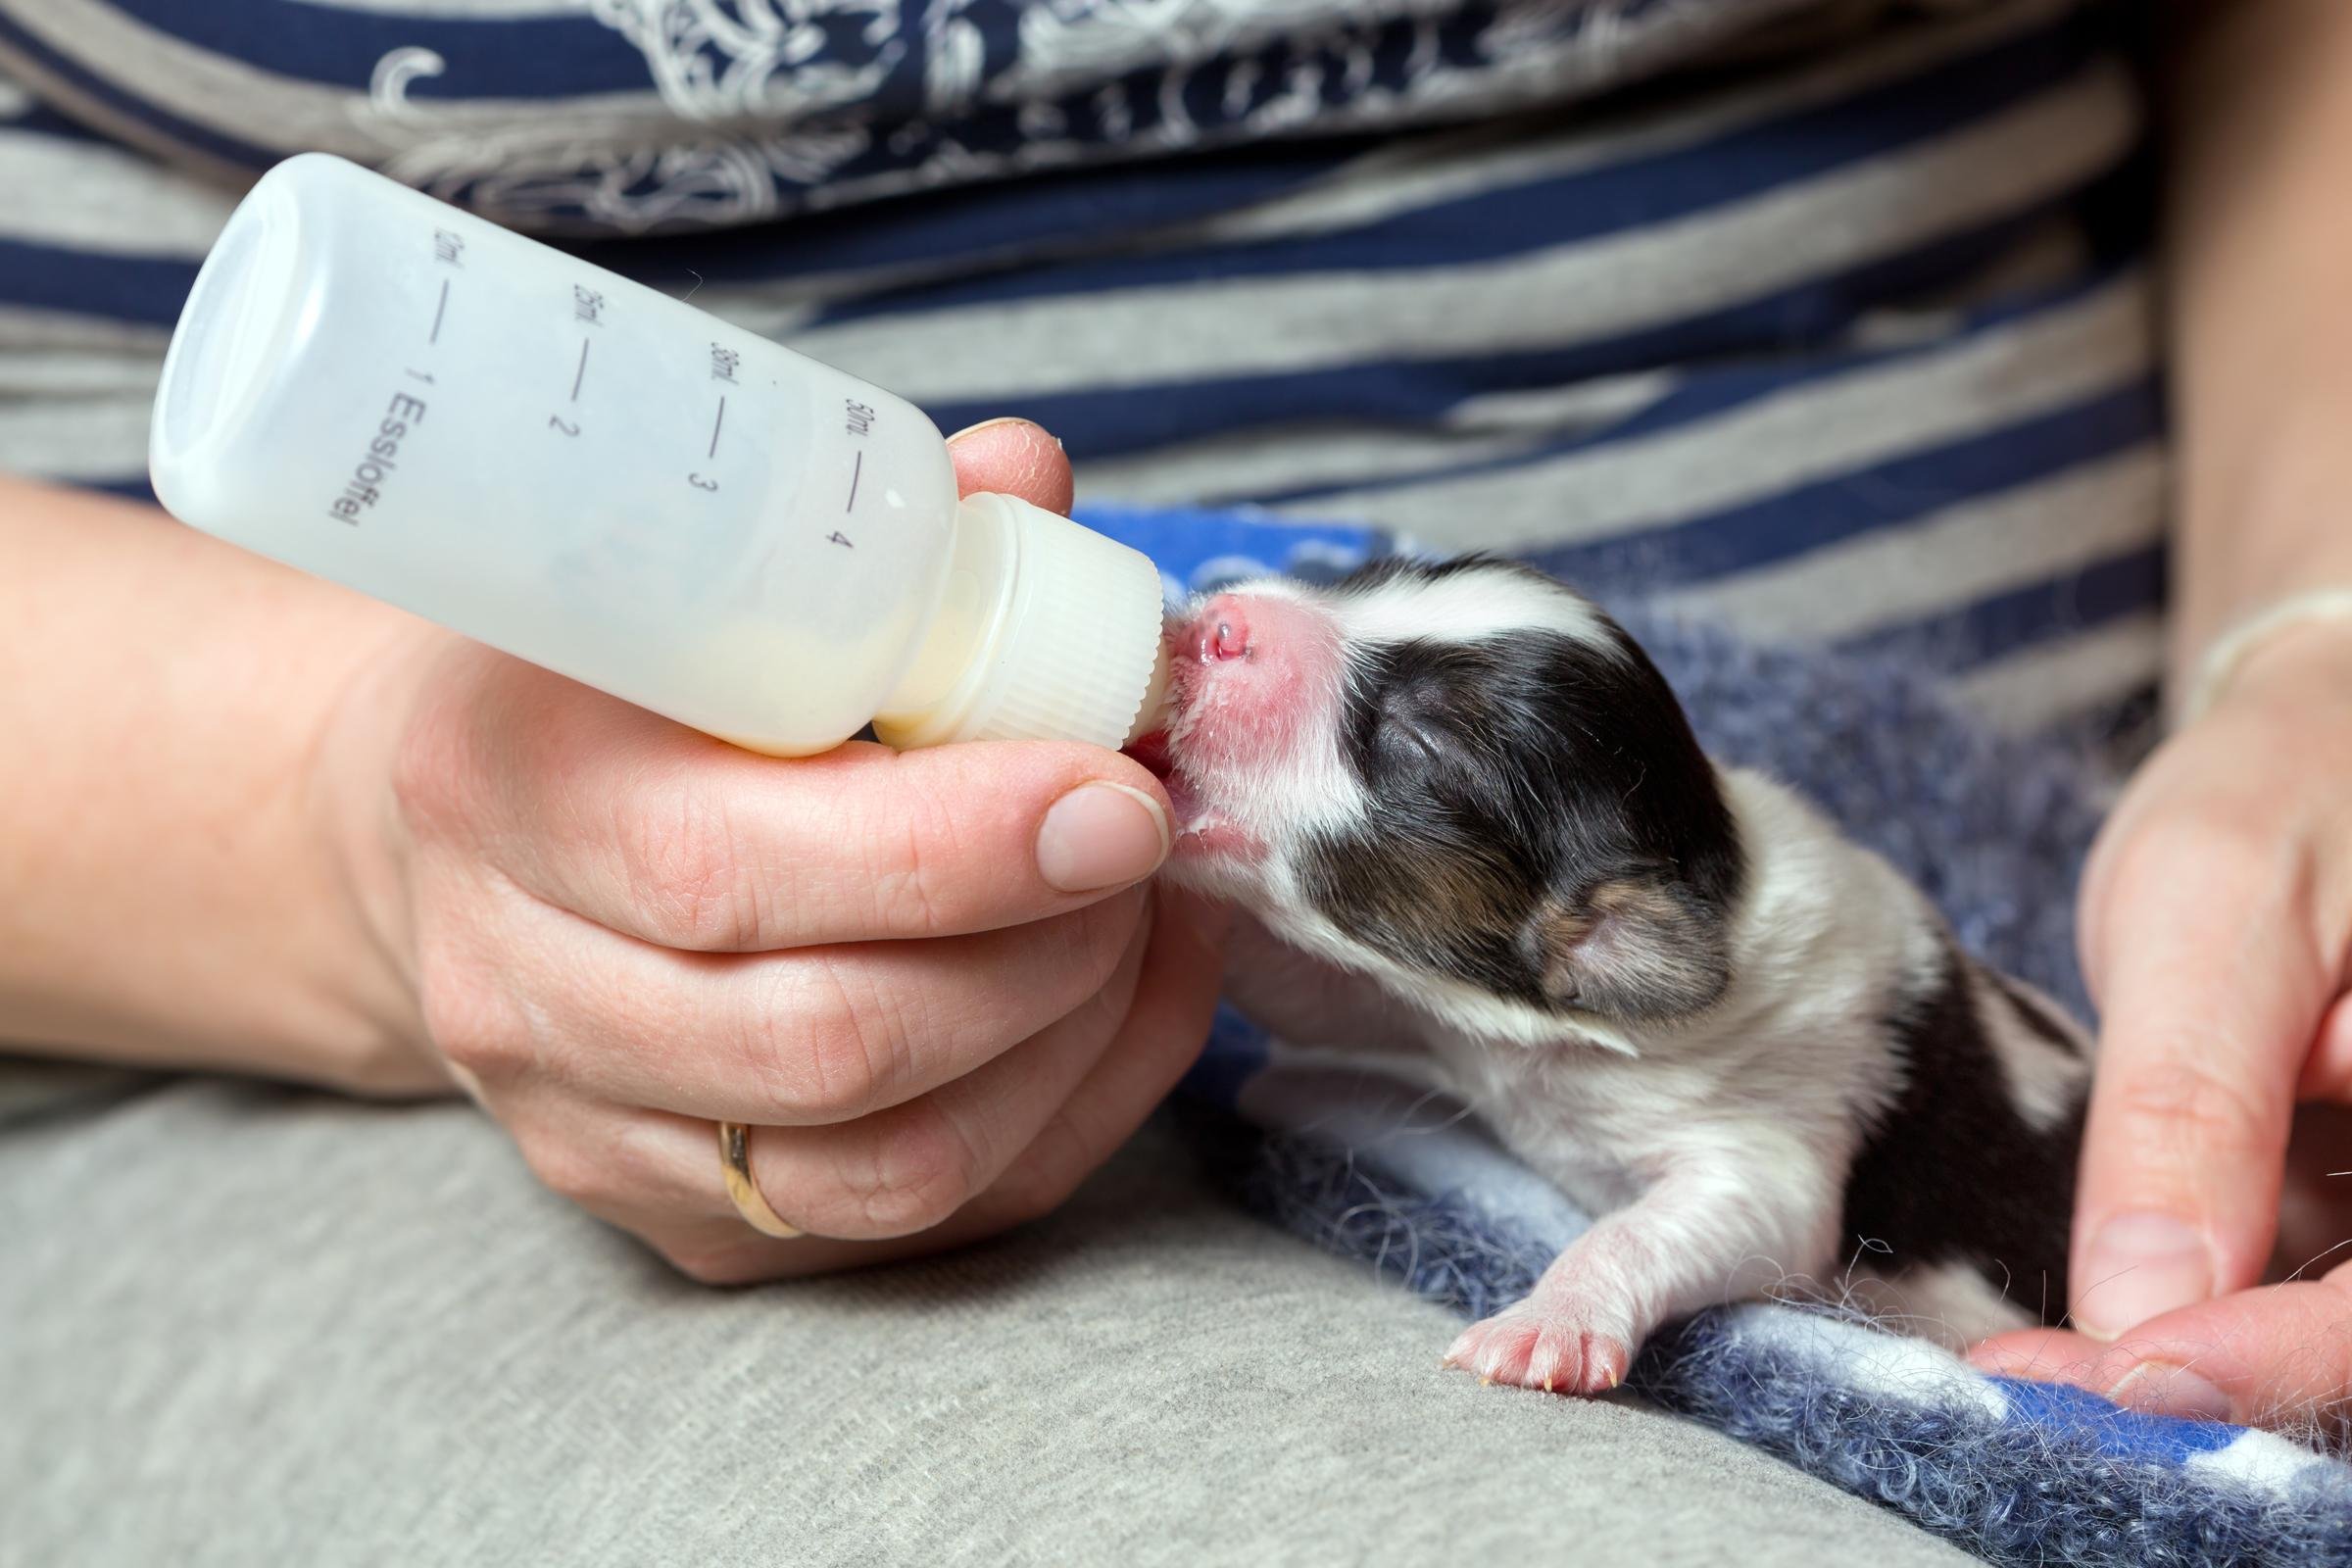 Щенки пьют молоко. Бутылочки для вскармливания новорожденных щенков. Приспособления для искусственного вскармливания щенков. Кормление щенят и котят. Молоко для вскармливания щенков.